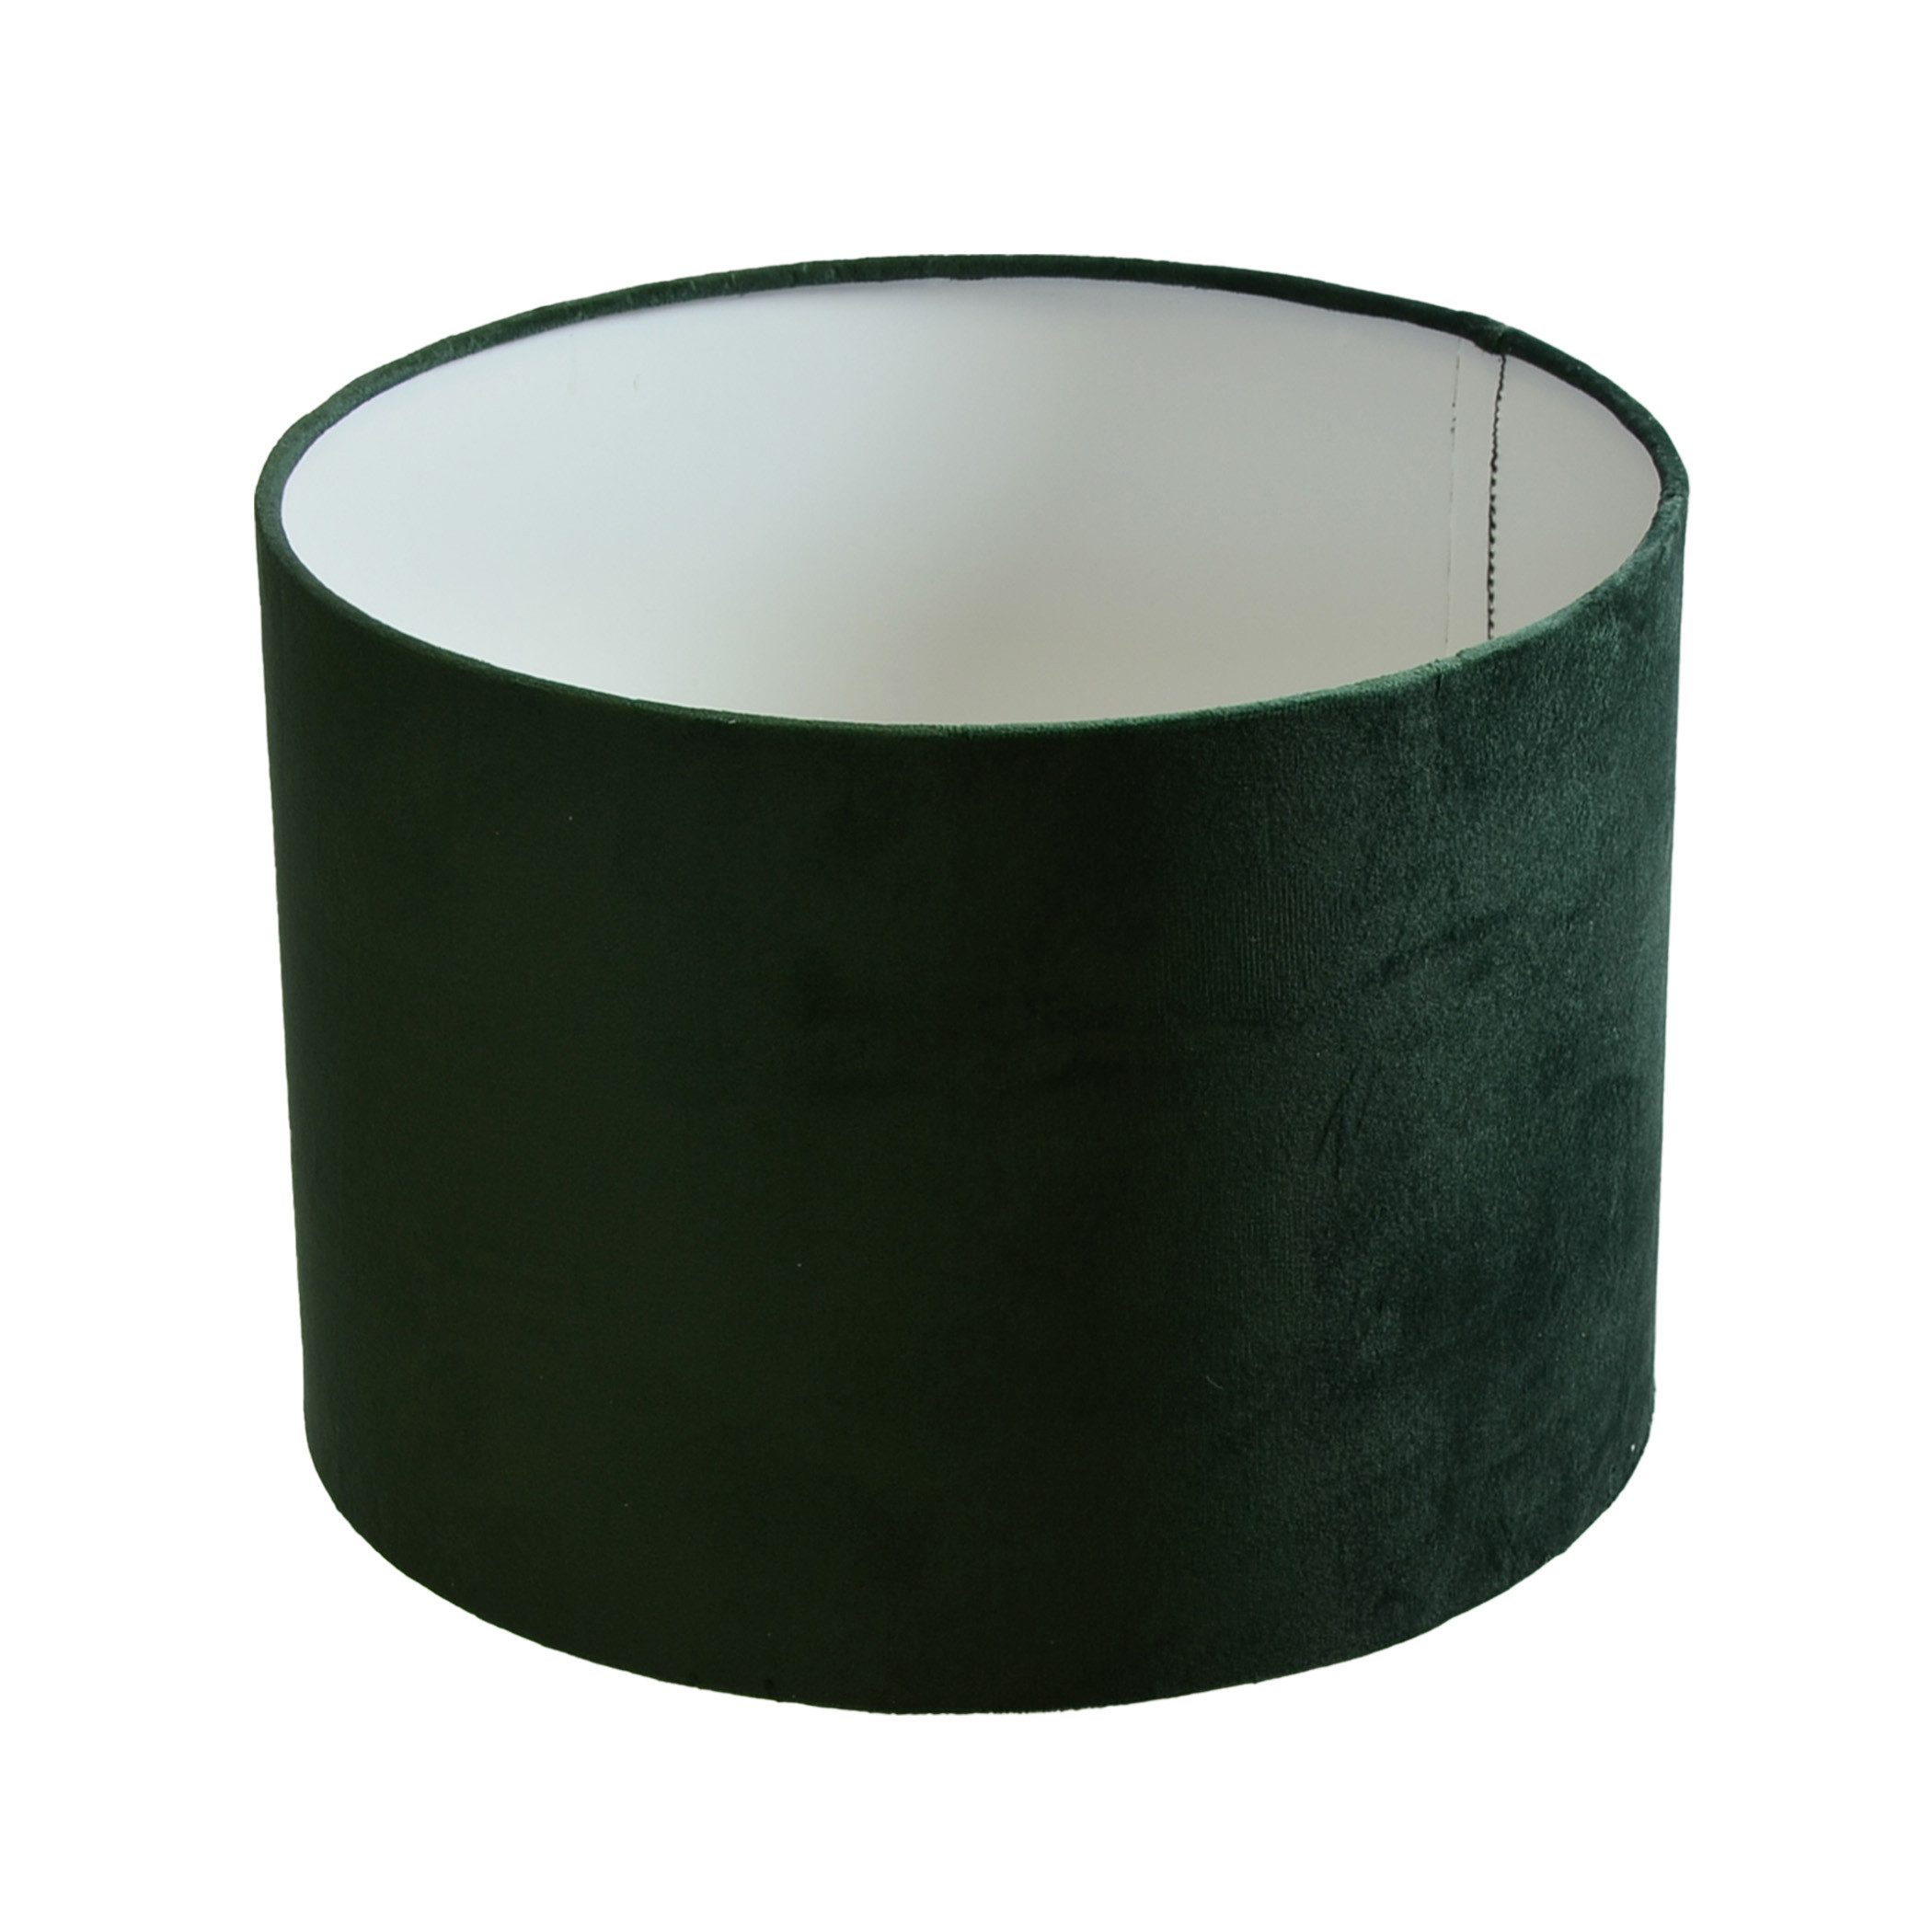 B&S Lampenschirm Ø 30 x 20 cm Velour grün samtige Oberfläche Zylinderform